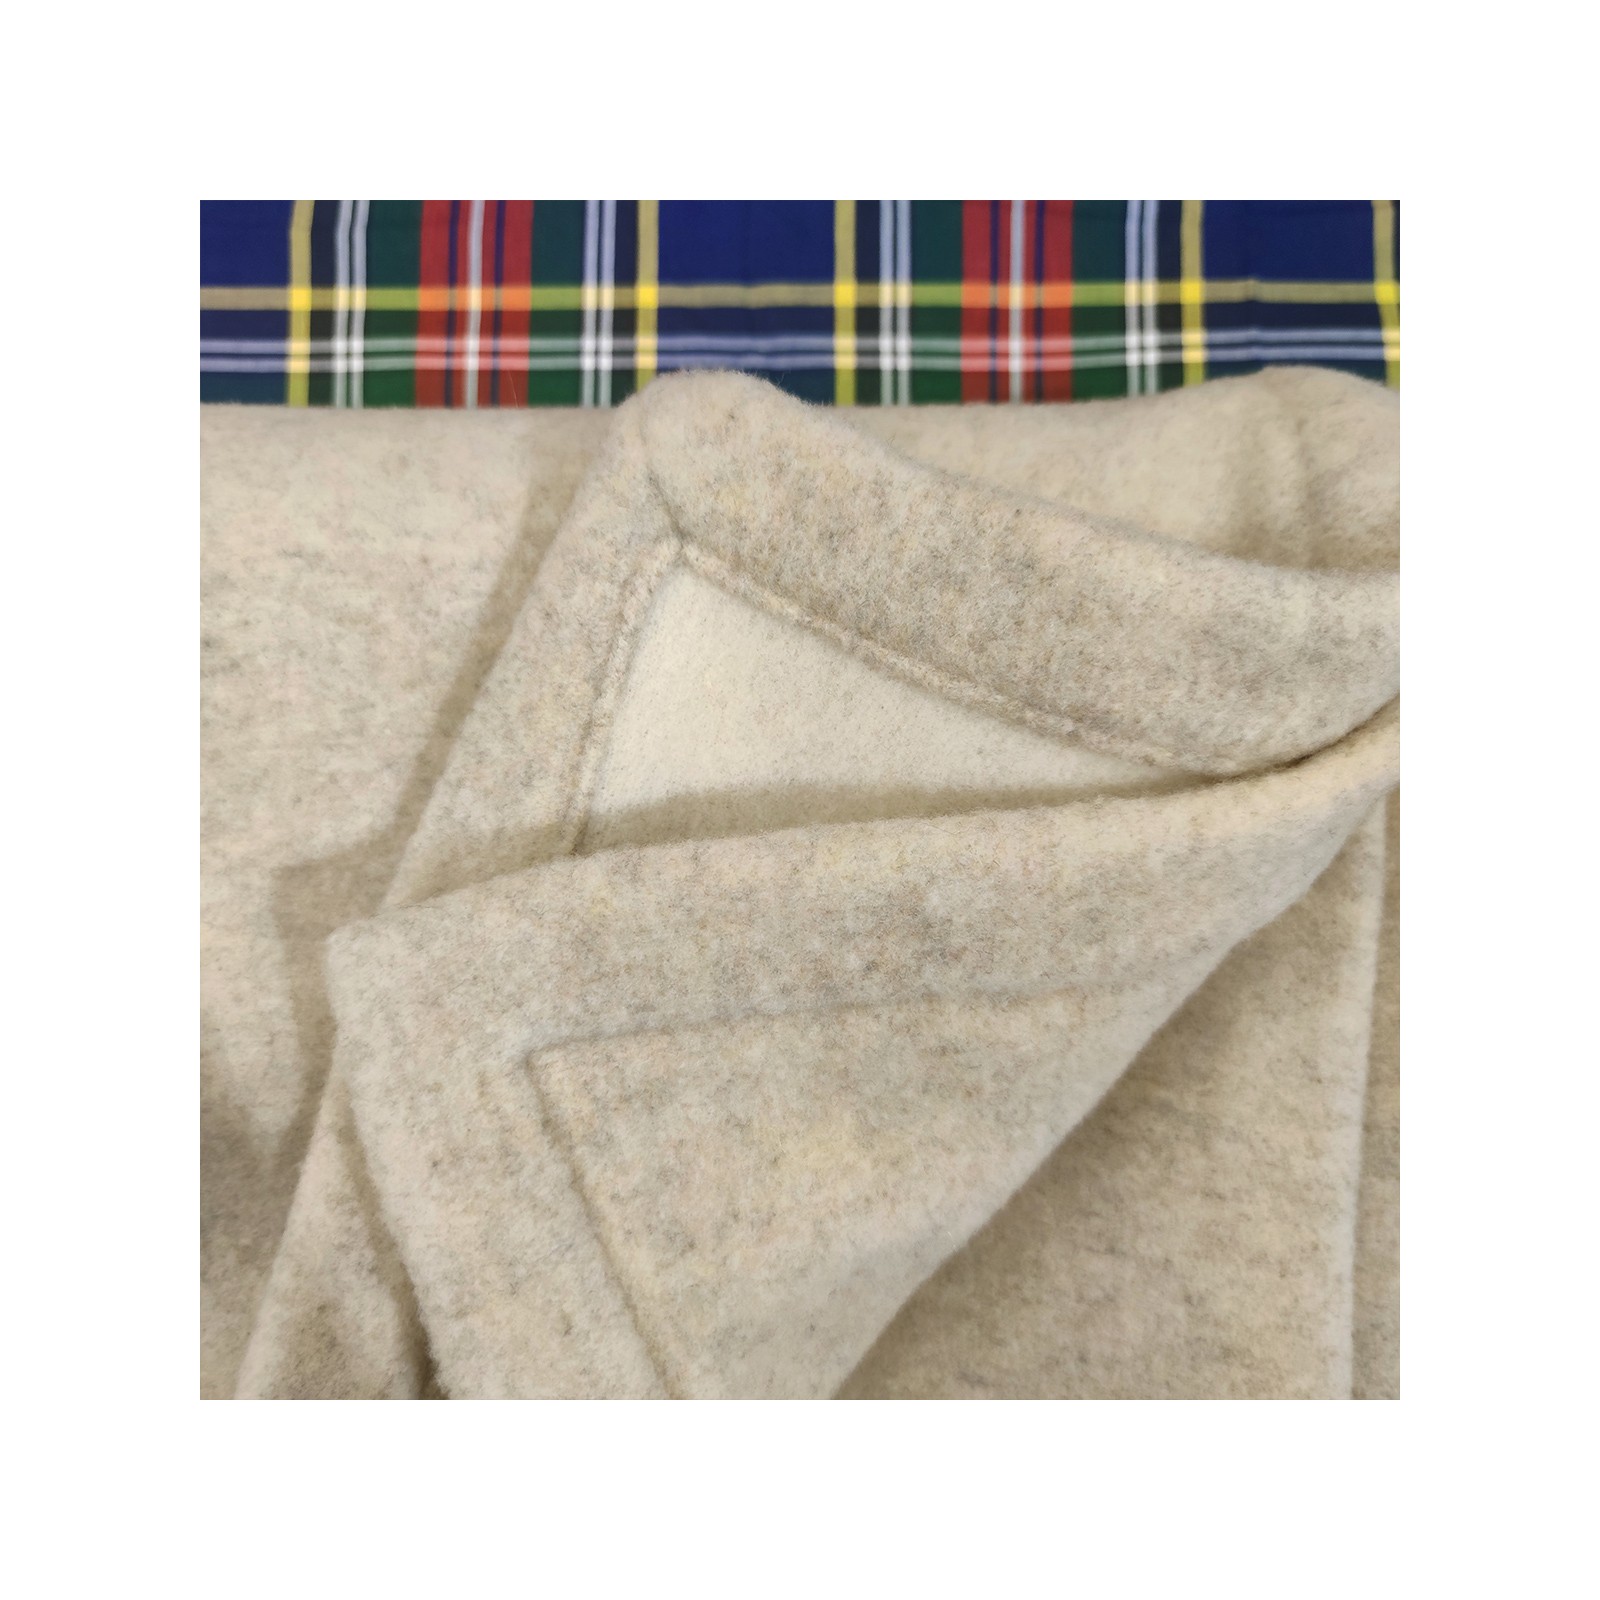 Coperta in pura lana merinos, 250 x 200 cm, con marchio di lana